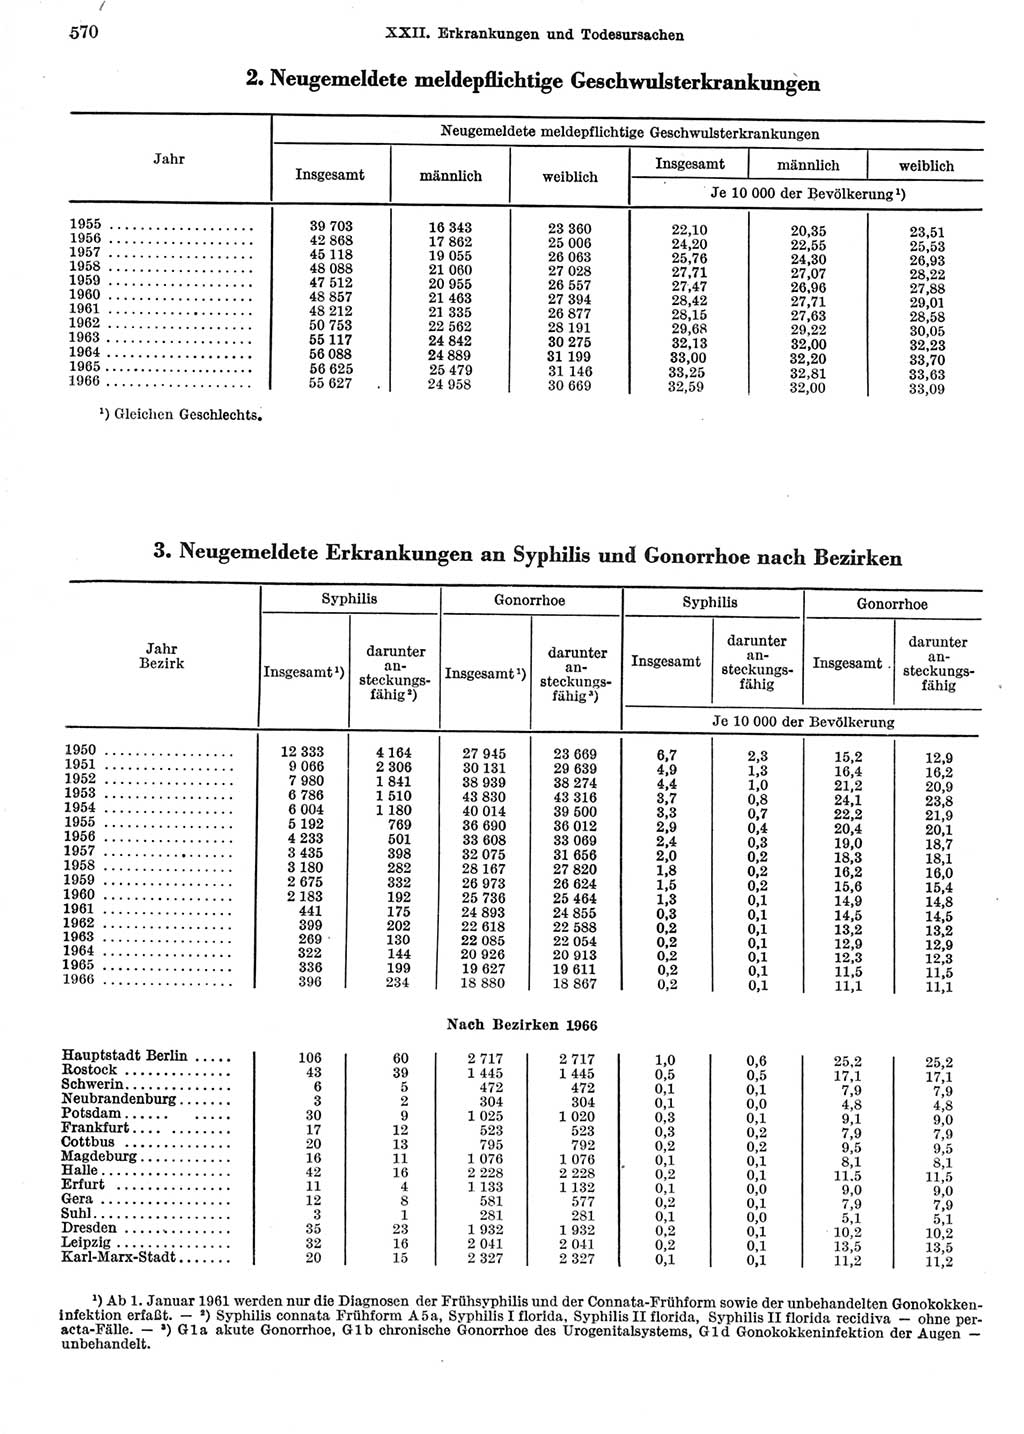 Statistisches Jahrbuch der Deutschen Demokratischen Republik (DDR) 1967, Seite 570 (Stat. Jb. DDR 1967, S. 570)